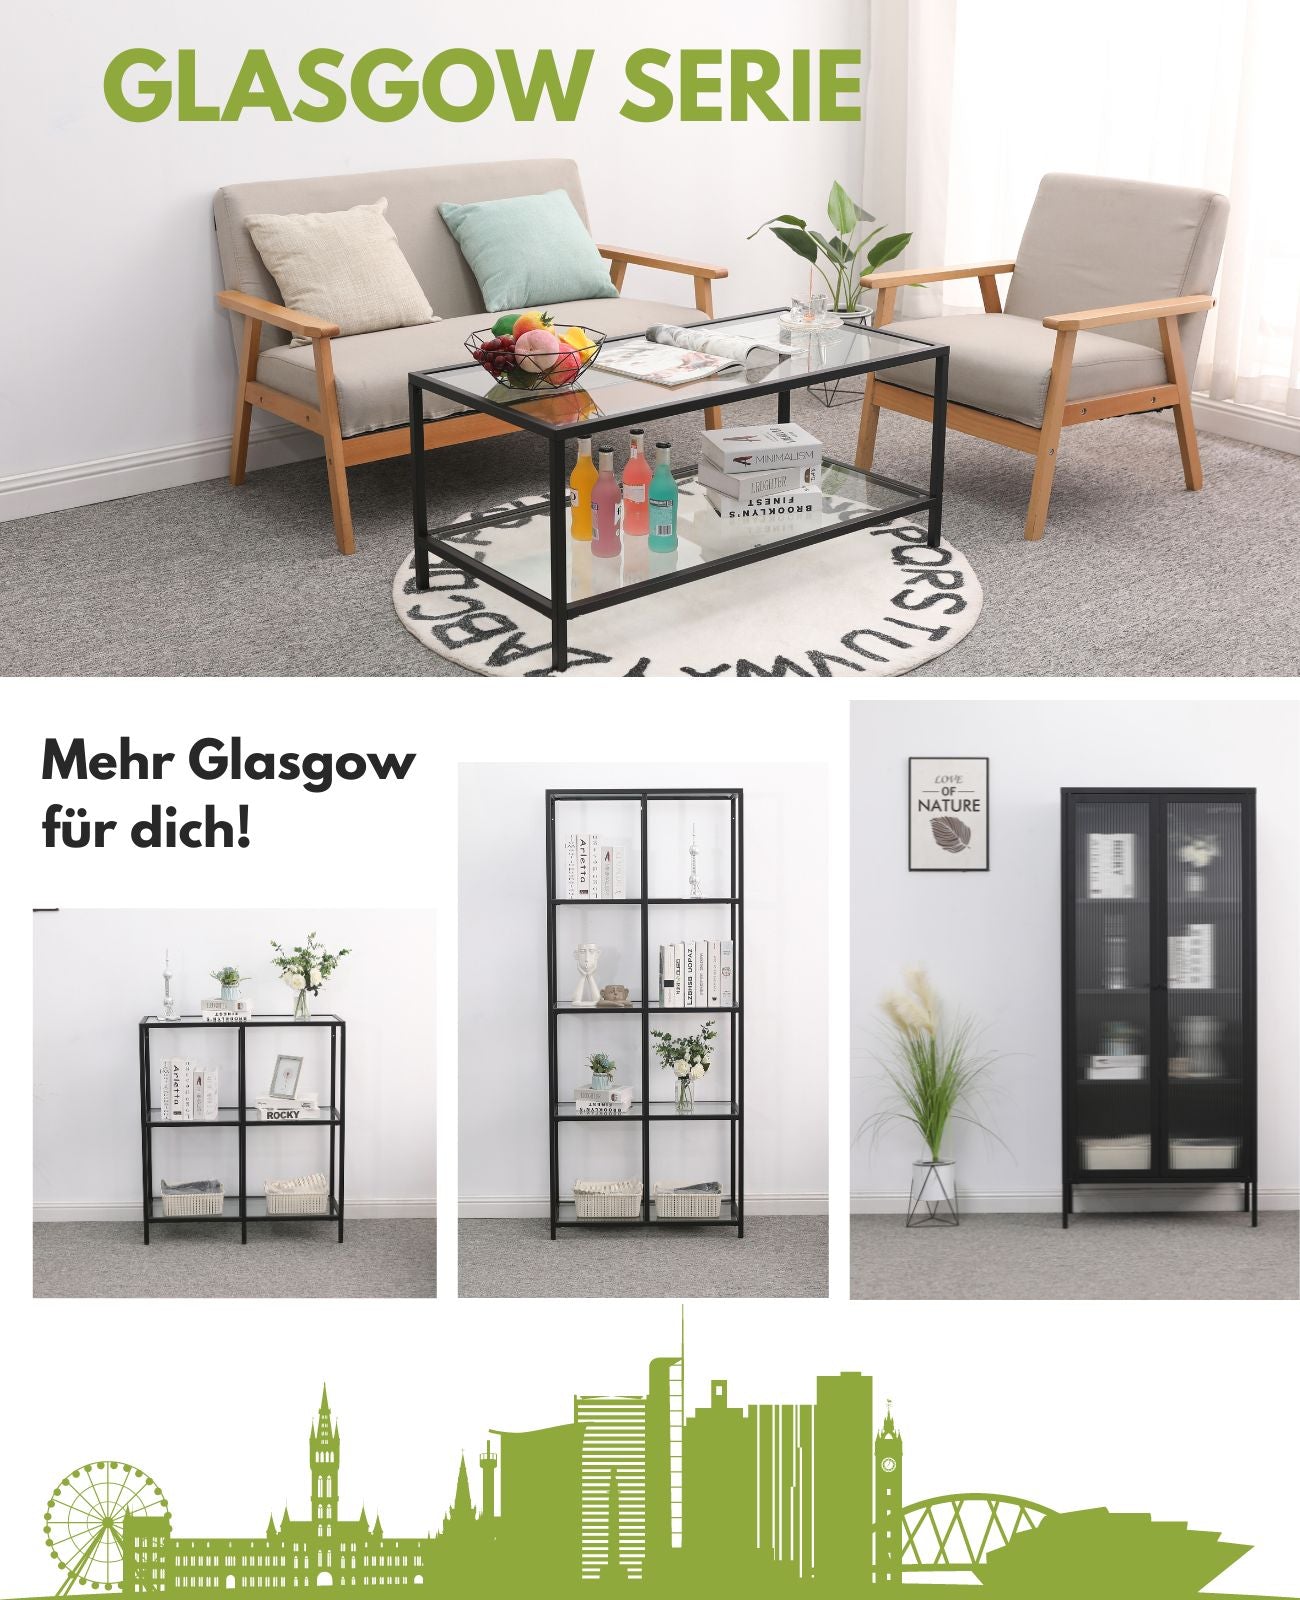 Die Möbelserie Glasgow bietet moderne Couchtische, Regale und Vitrinen aus Metall für einen stilvollen Wohnbereich.